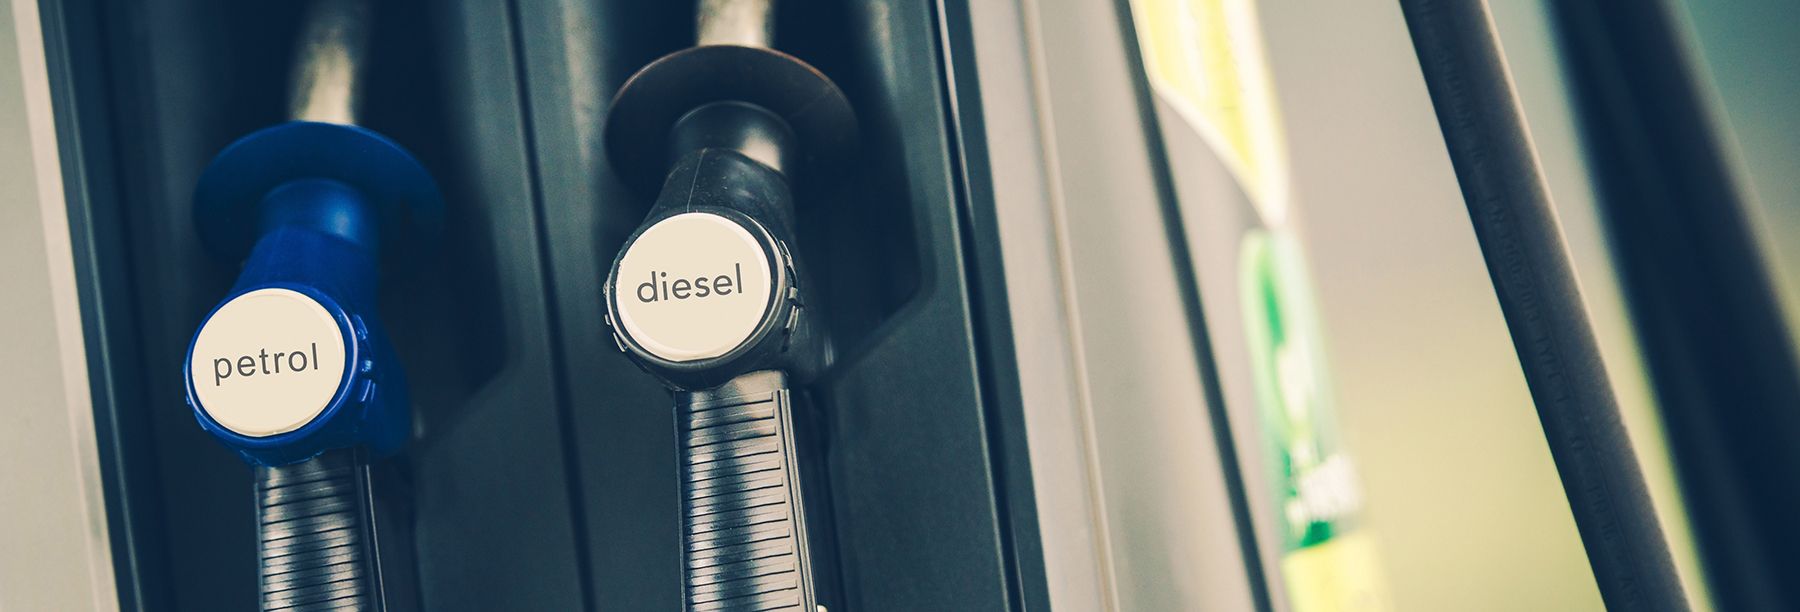 Petrol or diesel?